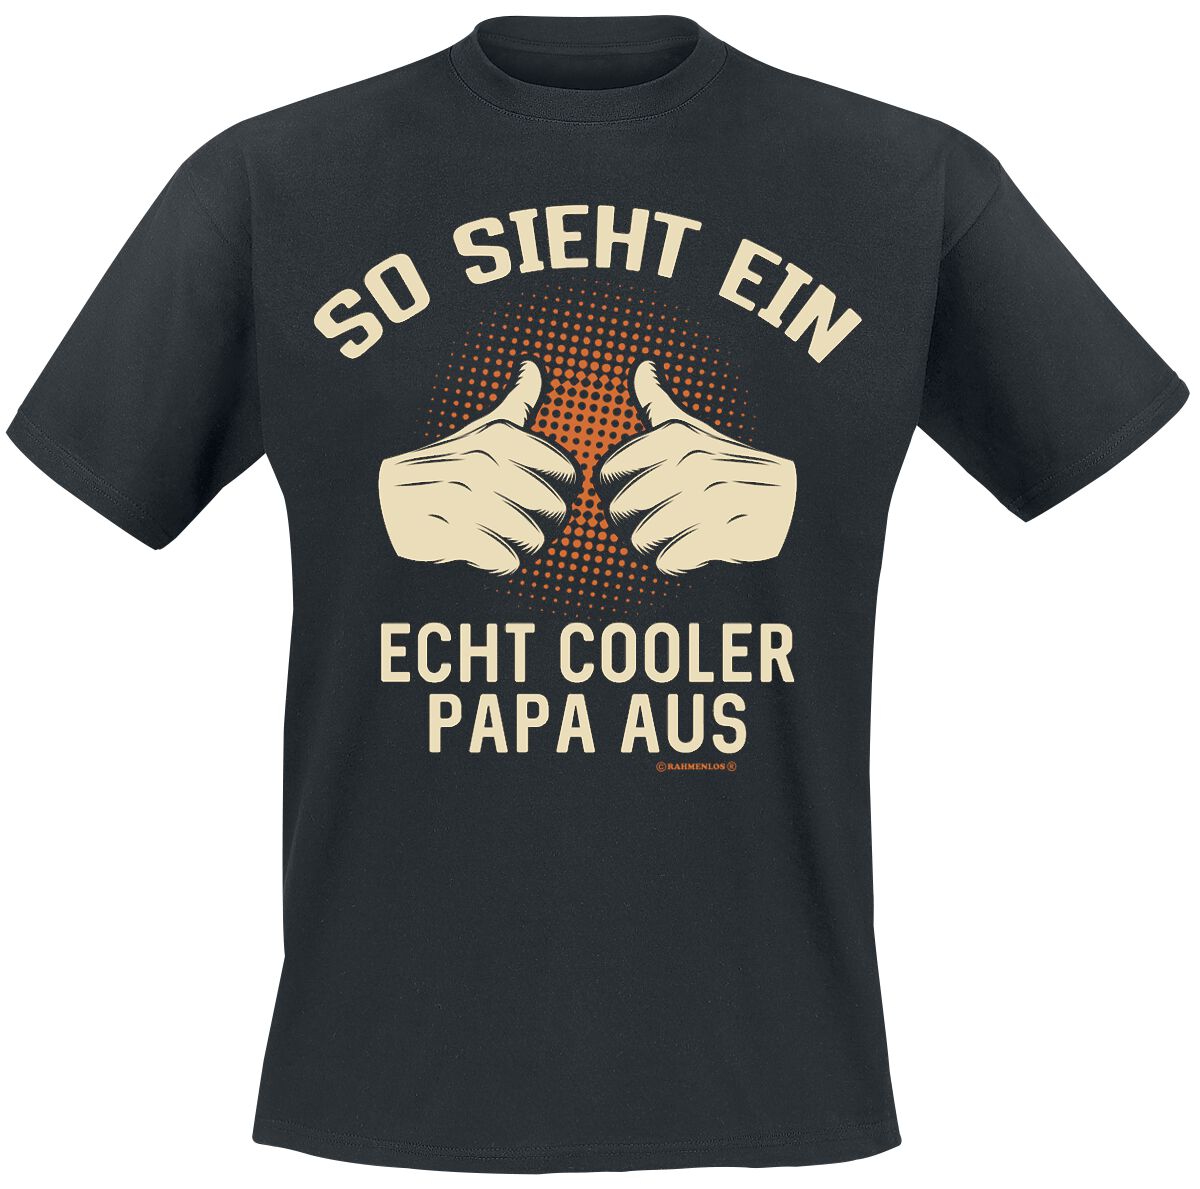 Familie & Freunde T-Shirt - So sieht ein echt cooler Papa aus - 4XL - für Männer - Größe 4XL - schwarz